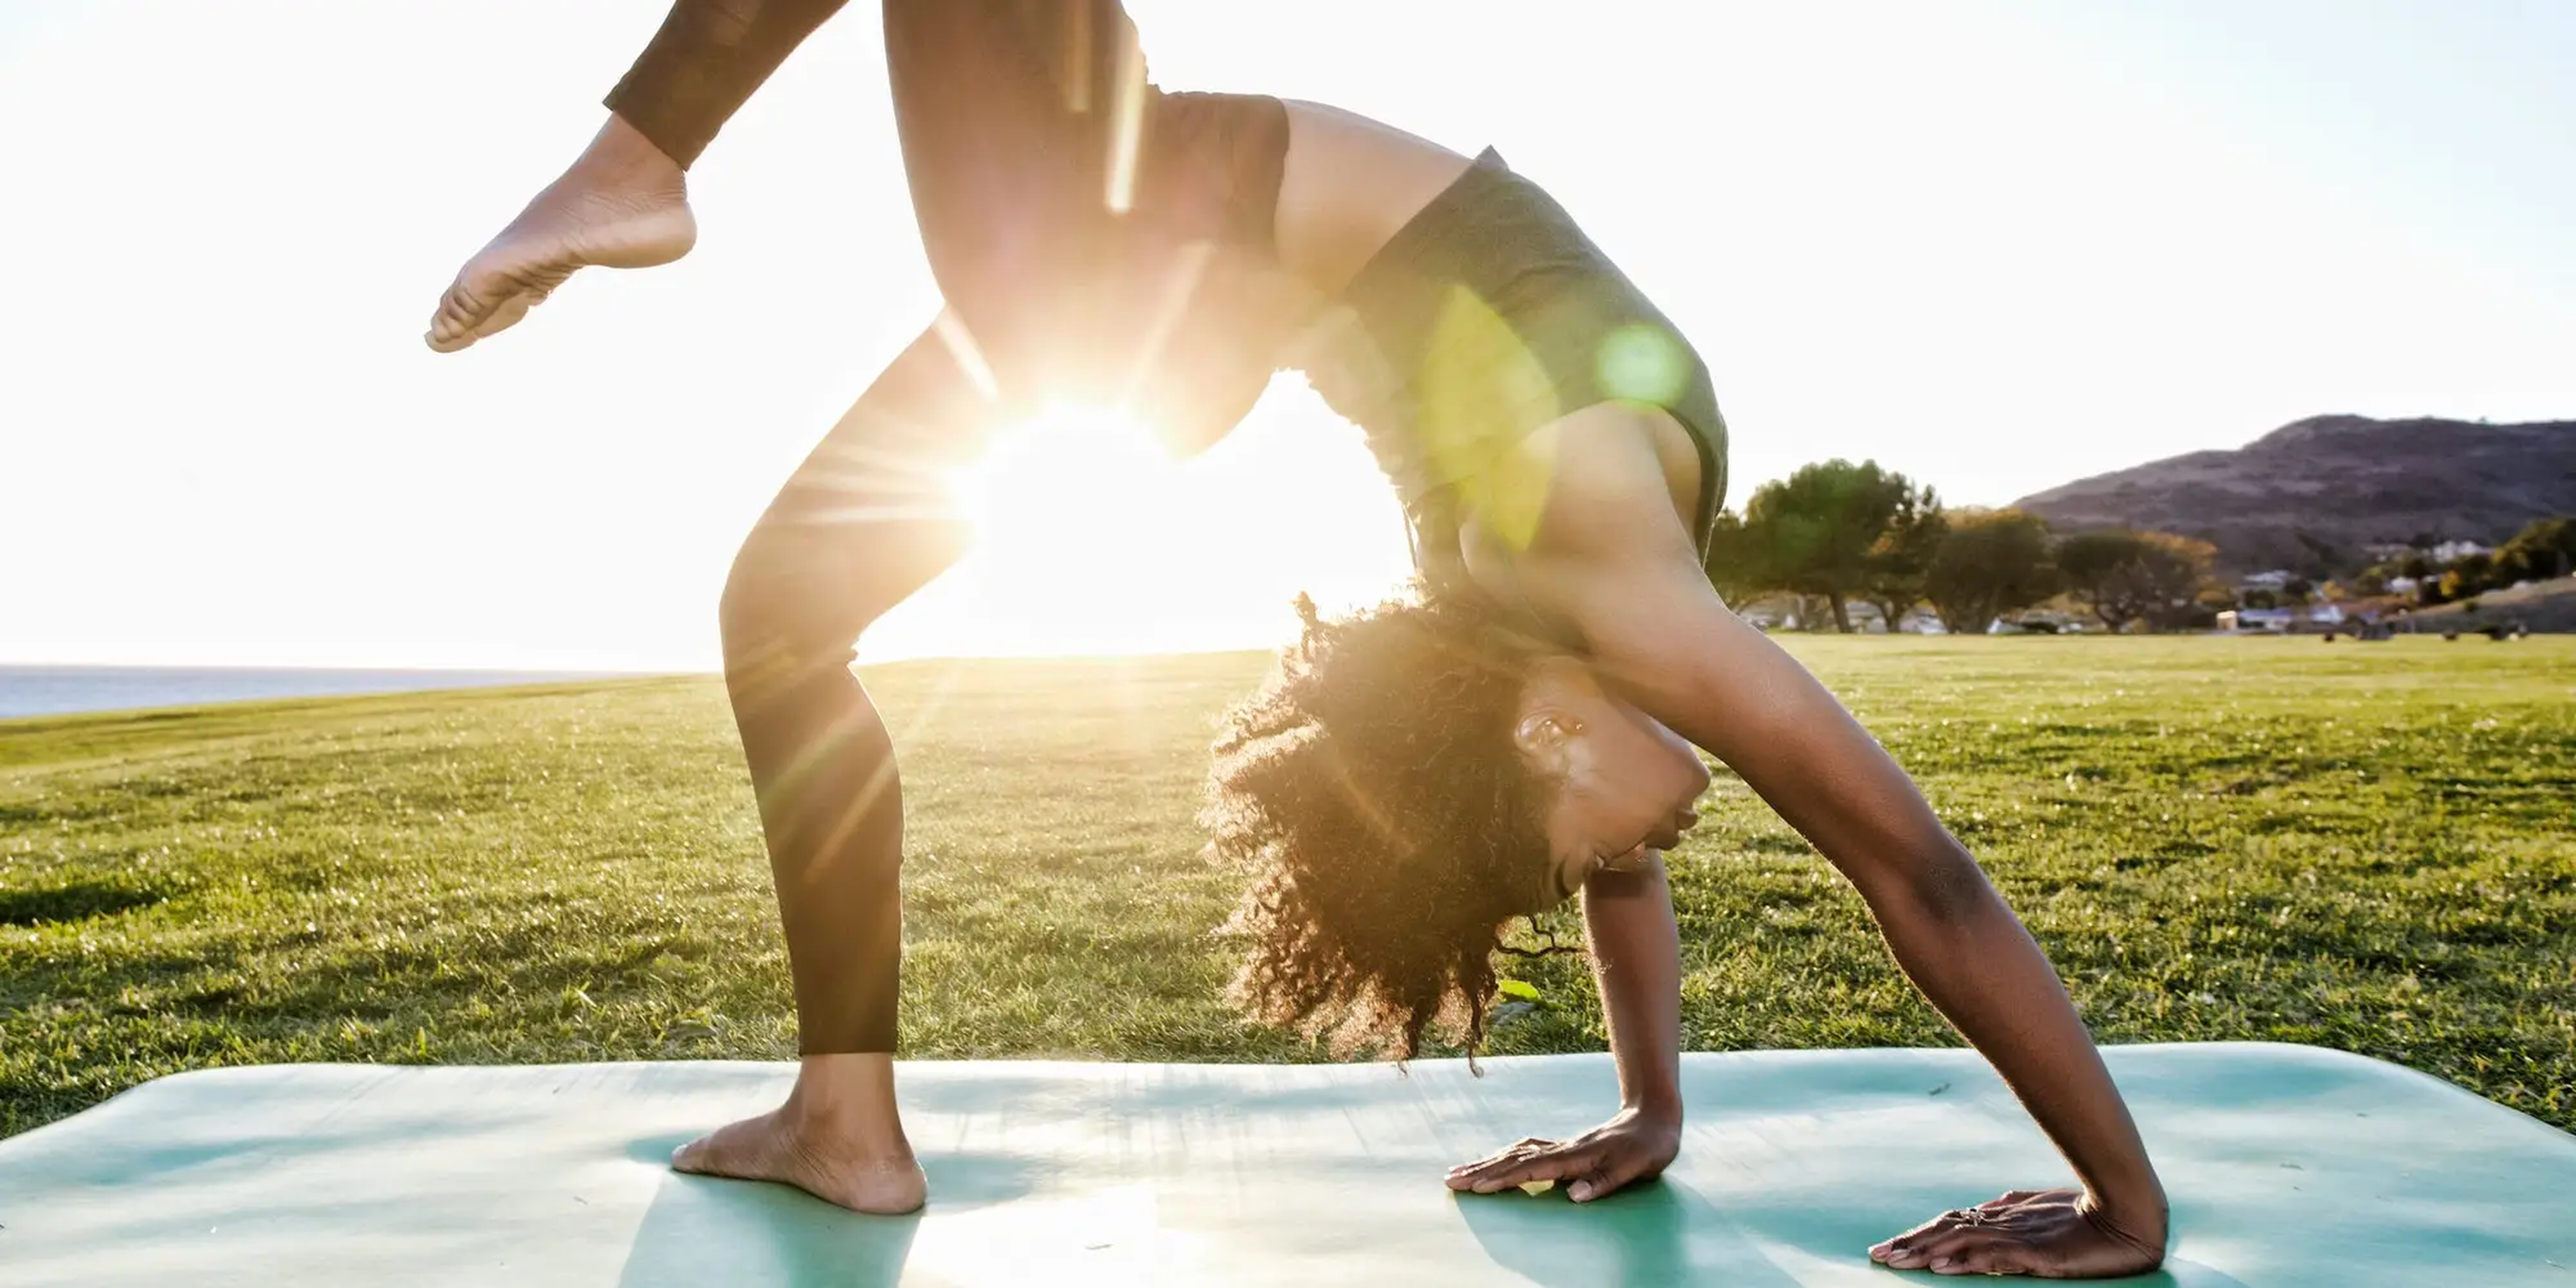 Los movimientos de yoga como la postura del triángulo, son una excelente manera de desarrollar abdominales fuertes y trabajar tu core.